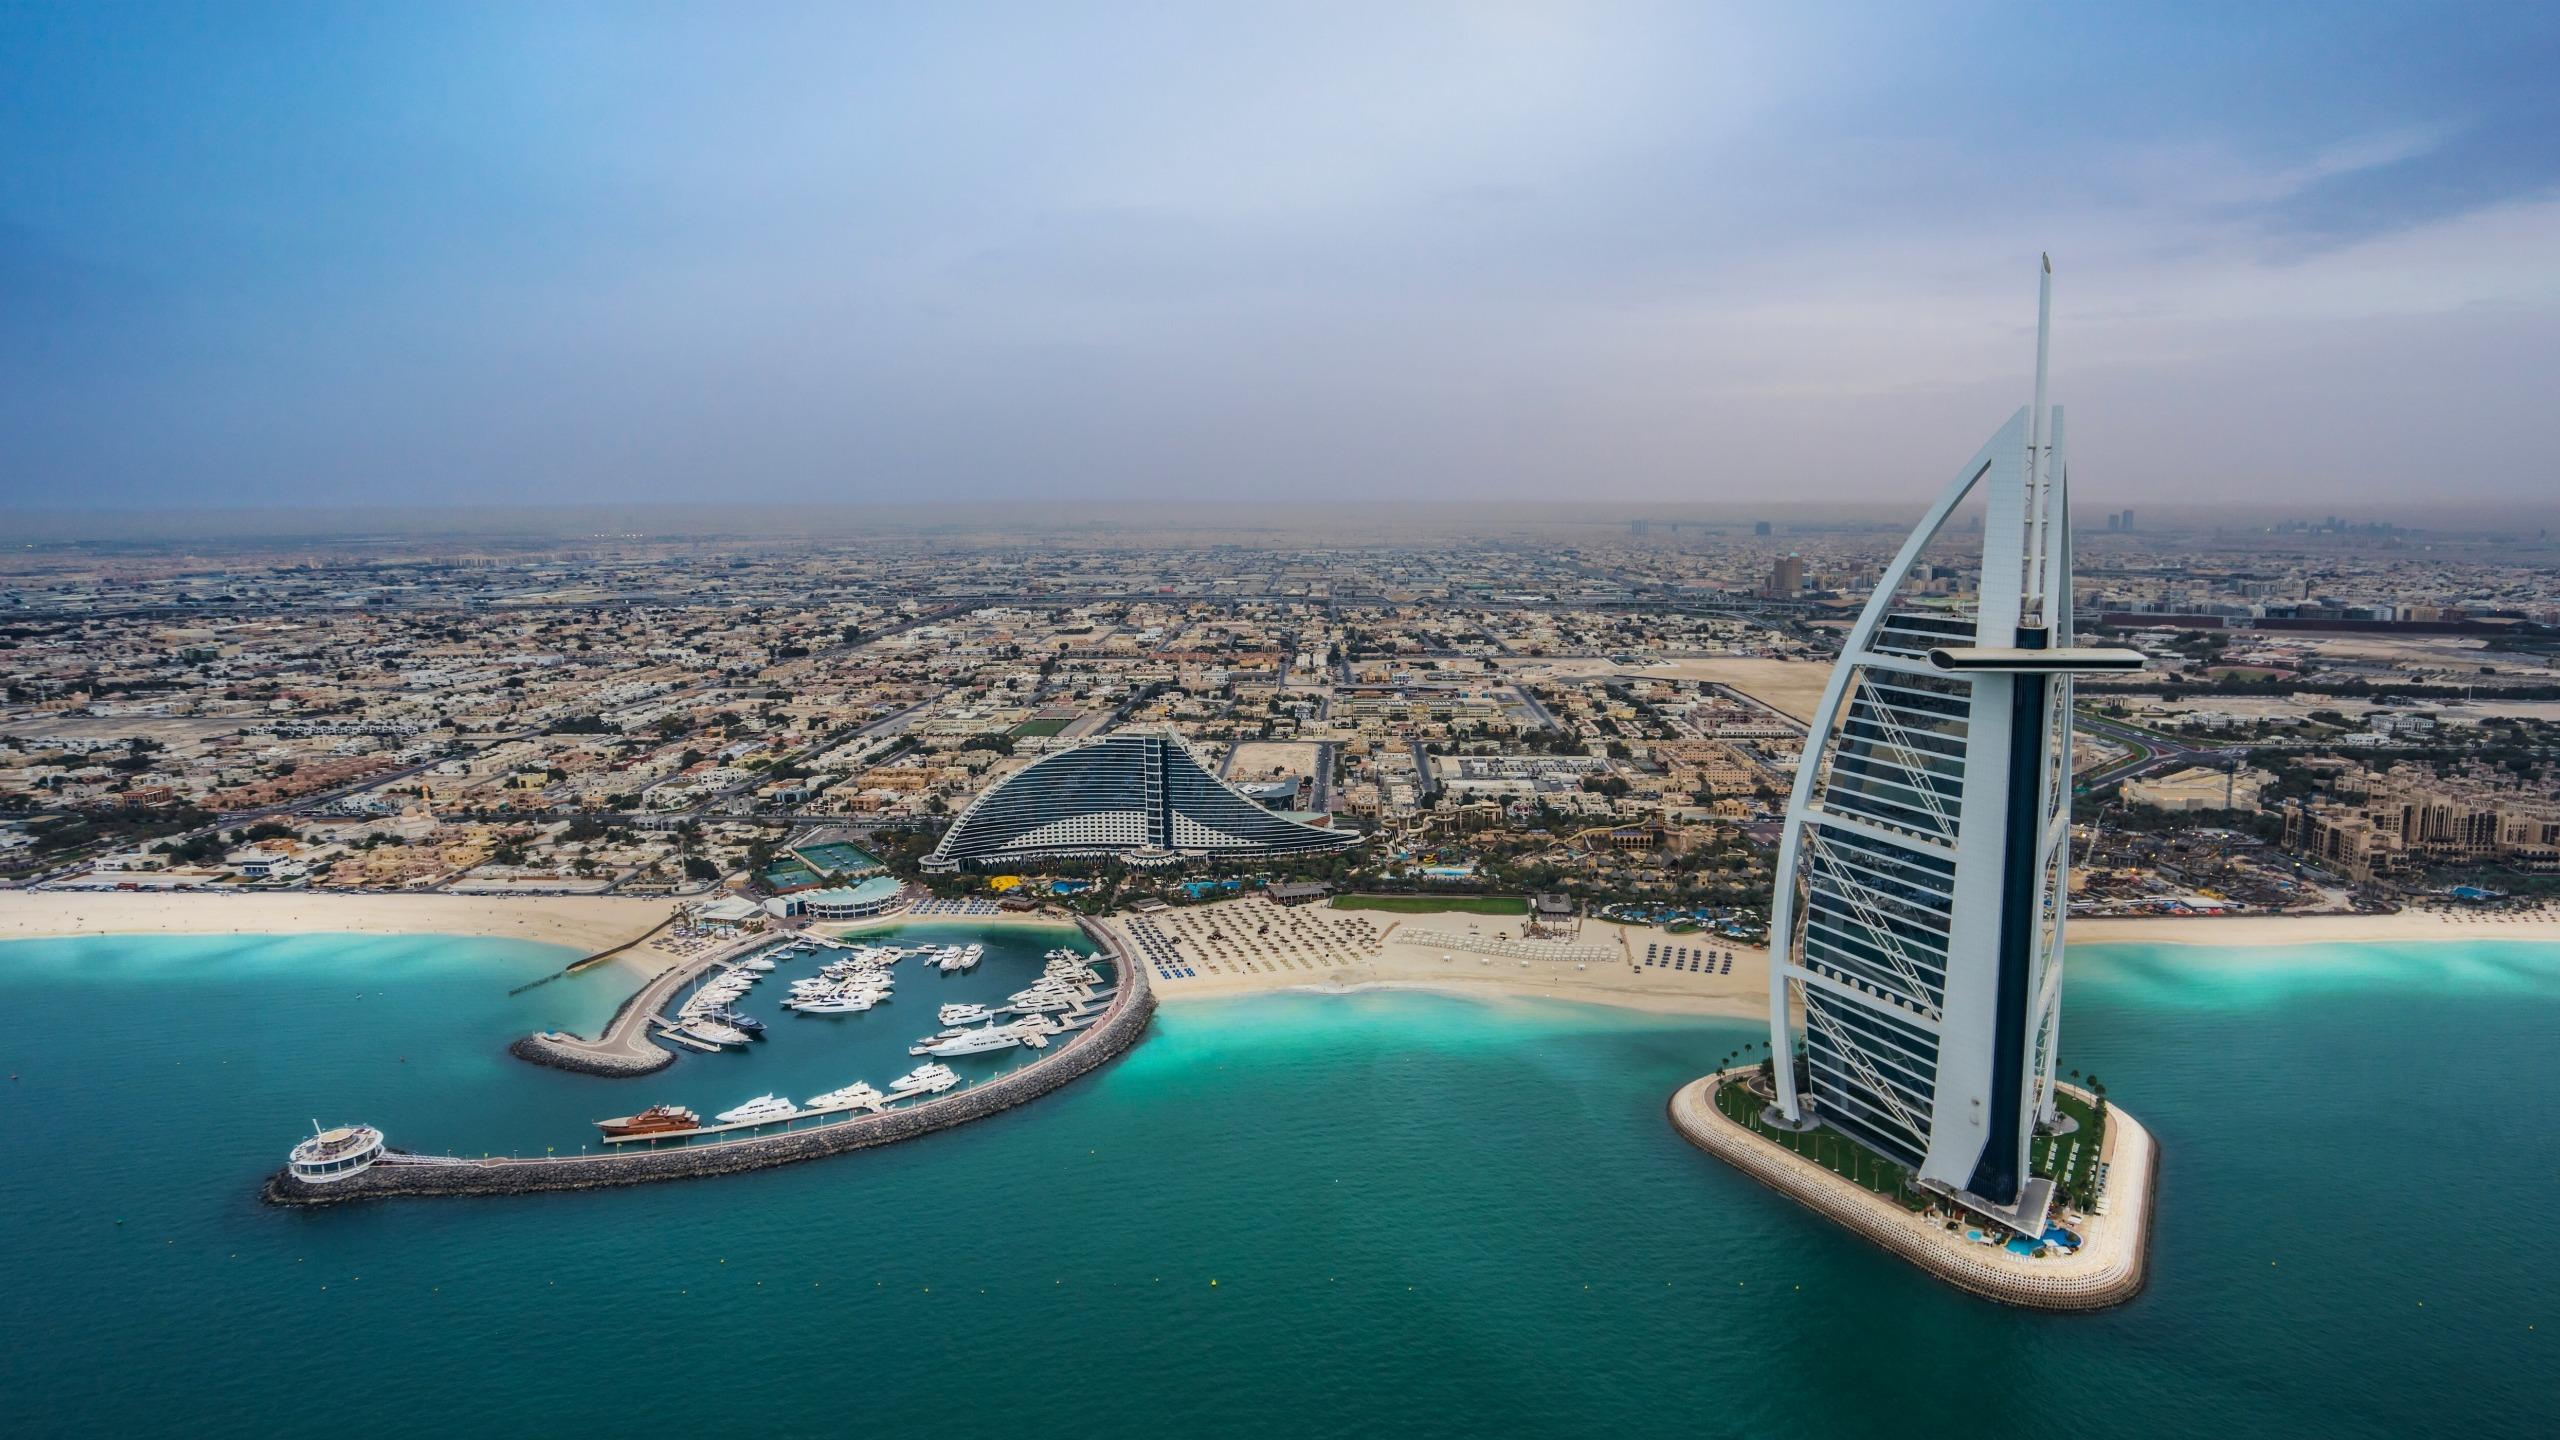 2560 x 1440 · jpeg - Jumeirah Beach in Dubai HD Wallpaper | Background Image | 2560x1440 ...